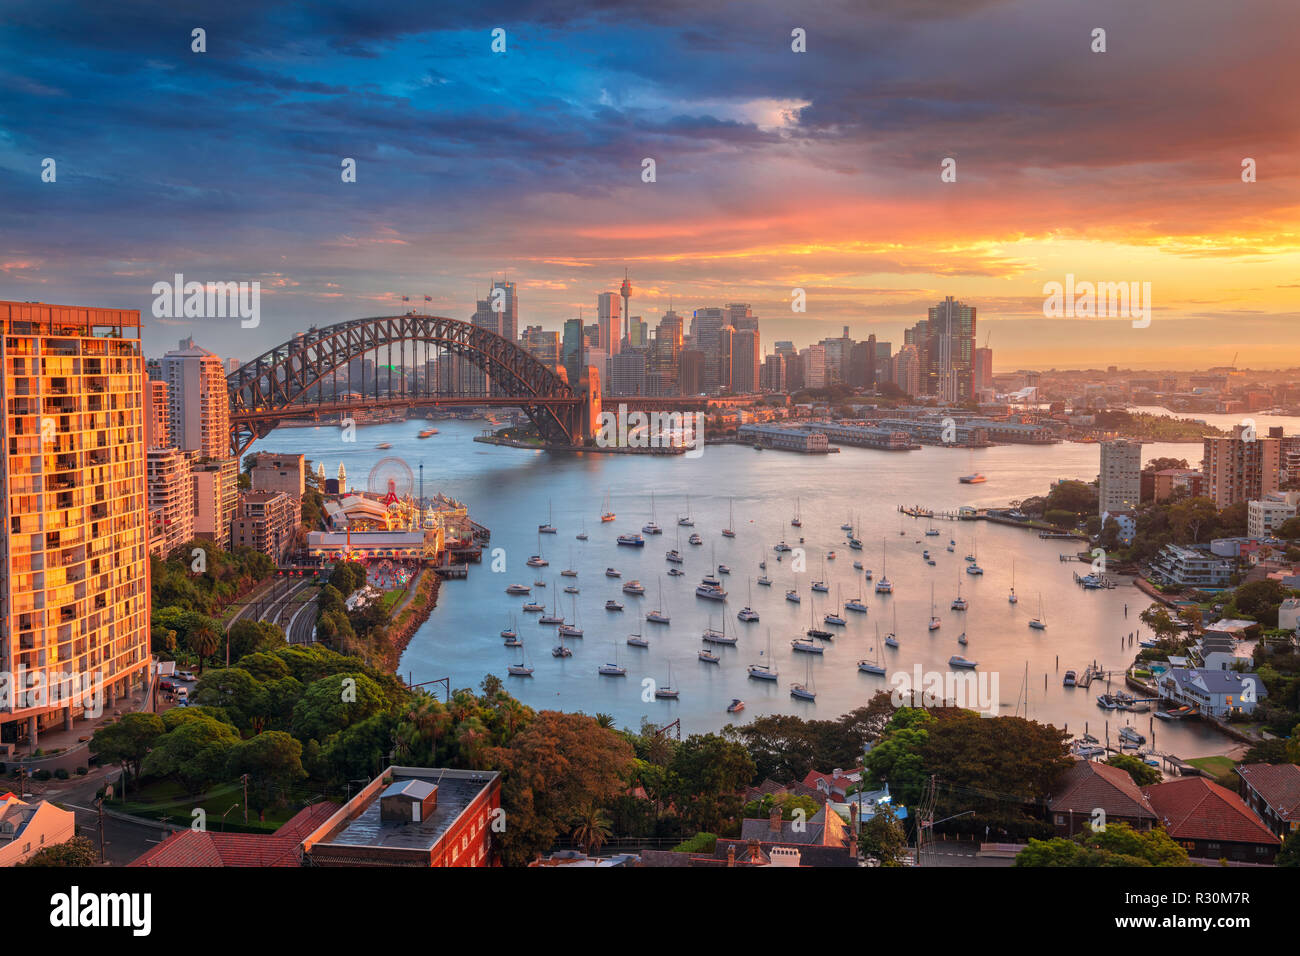 Sydney. Cityscape image of Sydney, Australia with Harbour Bridge and Sydney skyline during sunset. Stock Photo